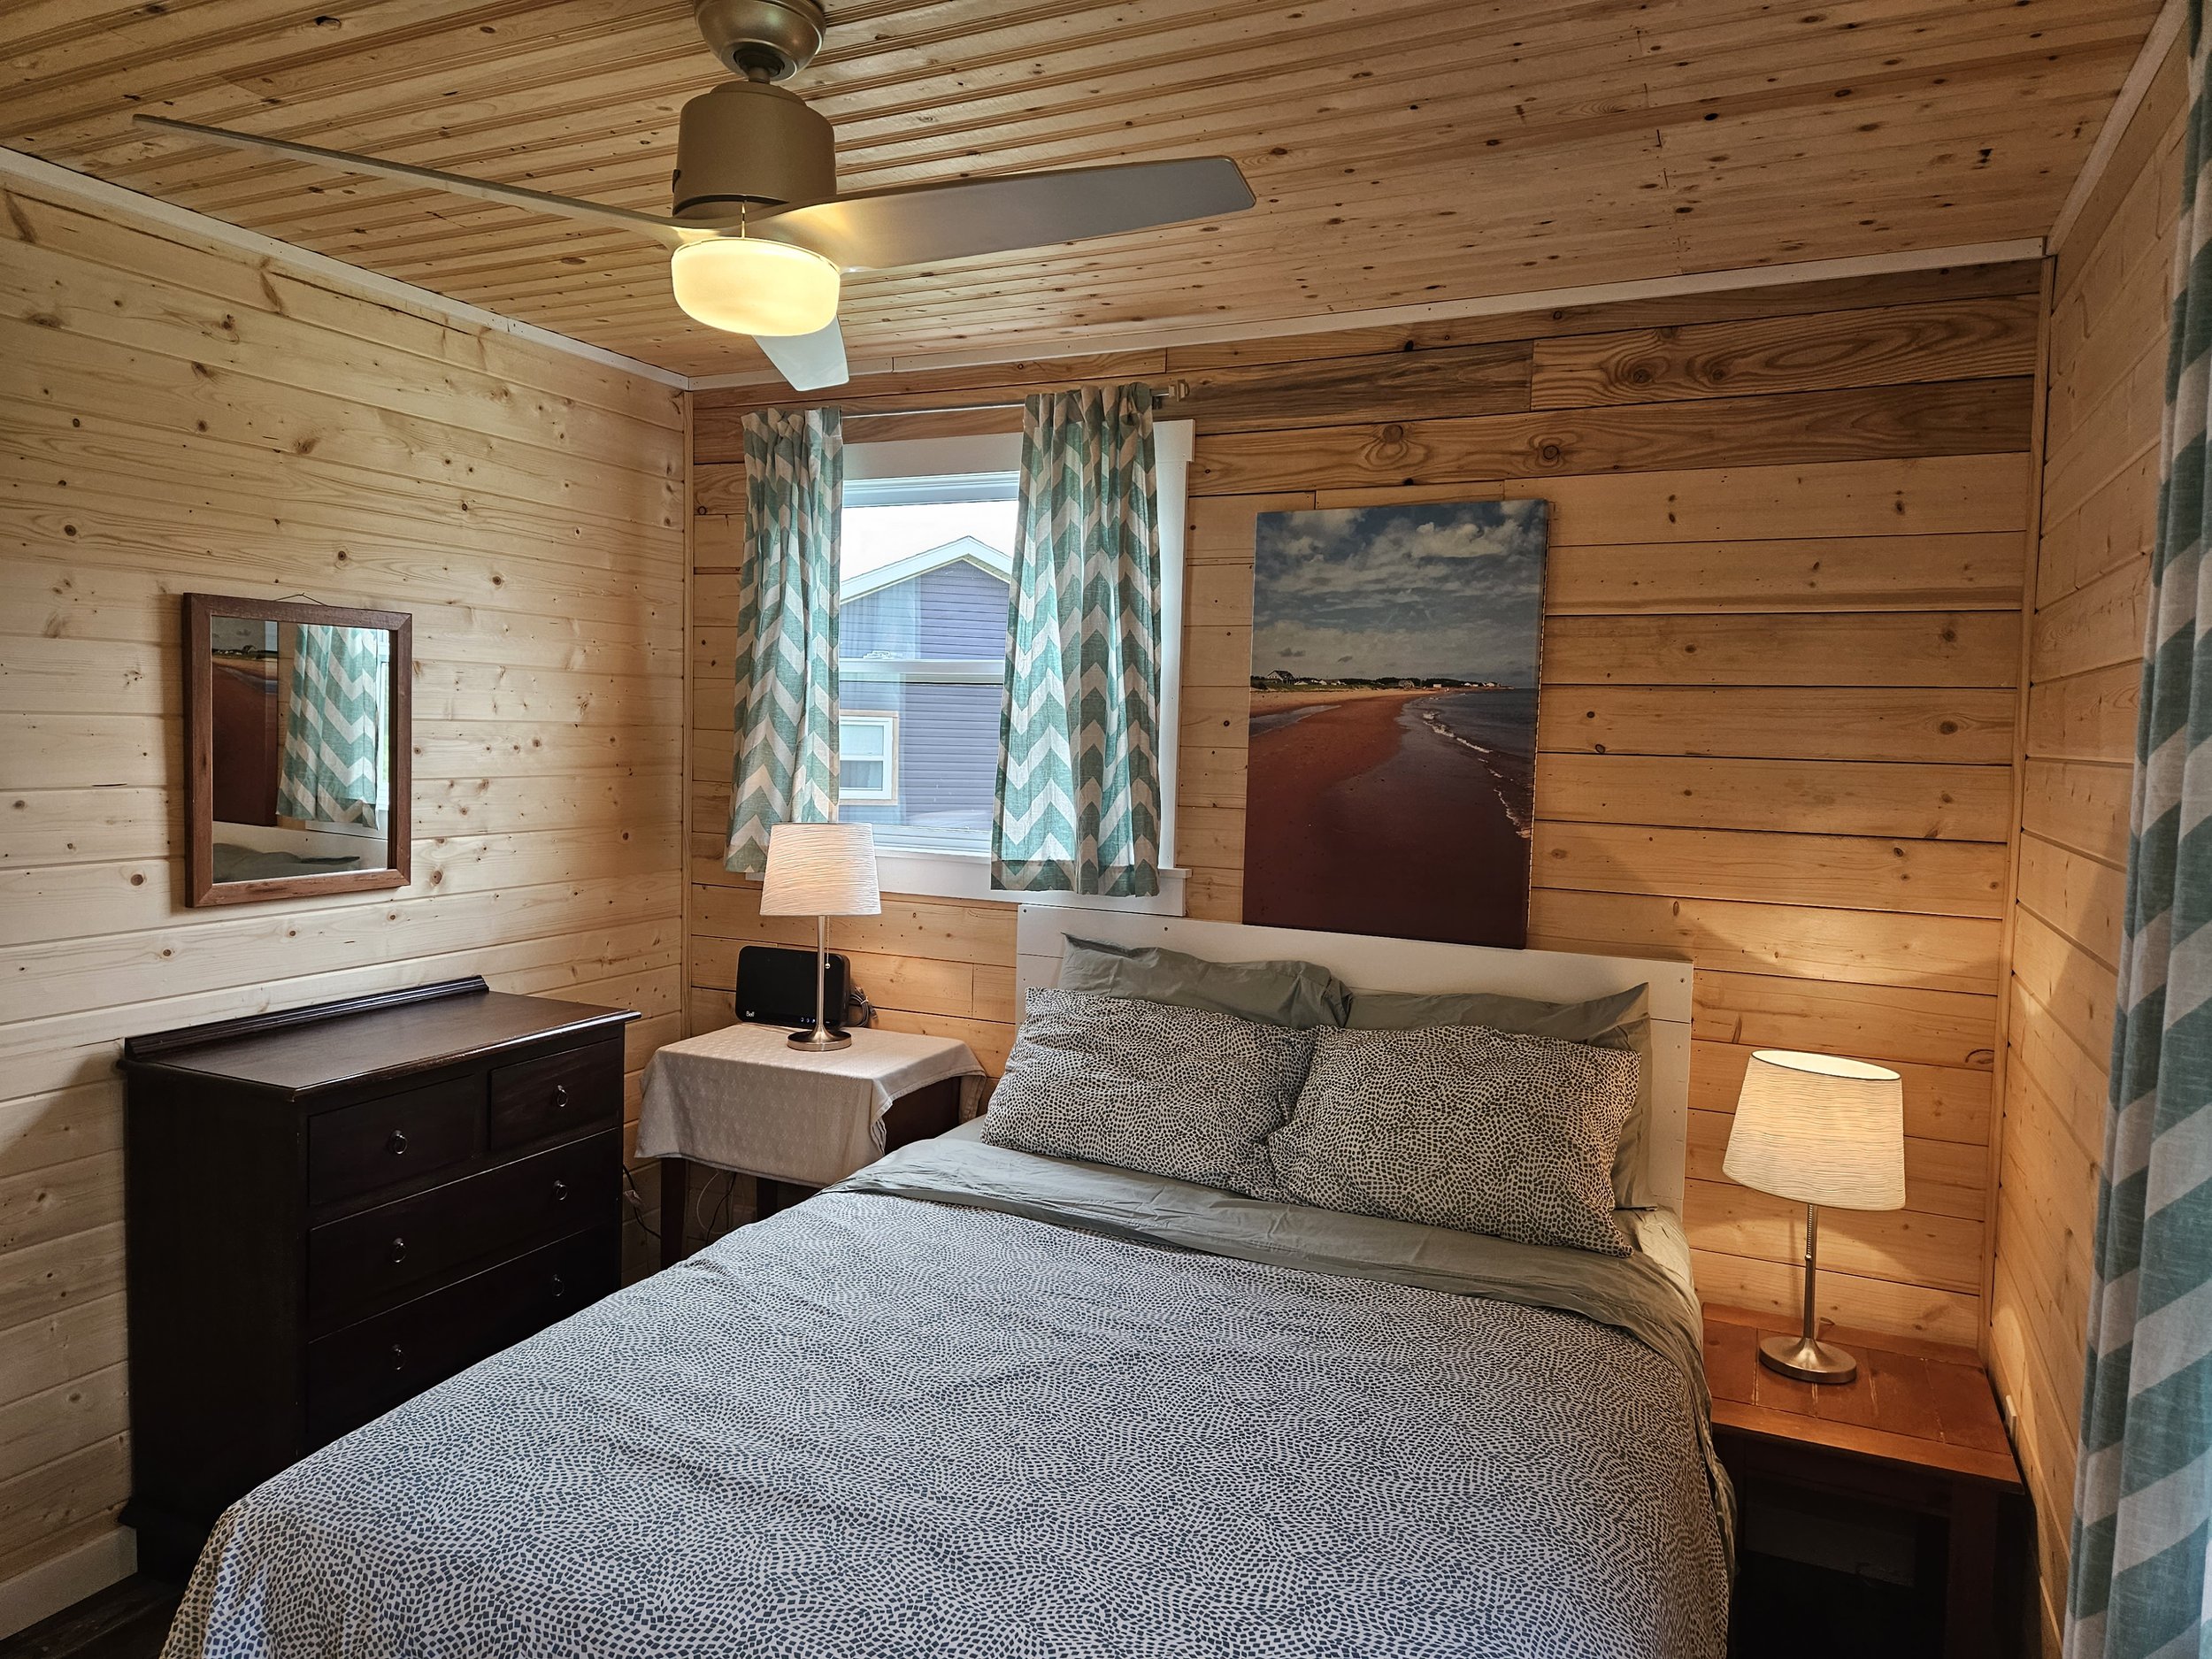 second bedroom- Beachhouse-  new vinyl windows, pine walls, pine ceiling, ceiling fan, new floor, solid 6 panel pine door.jpg